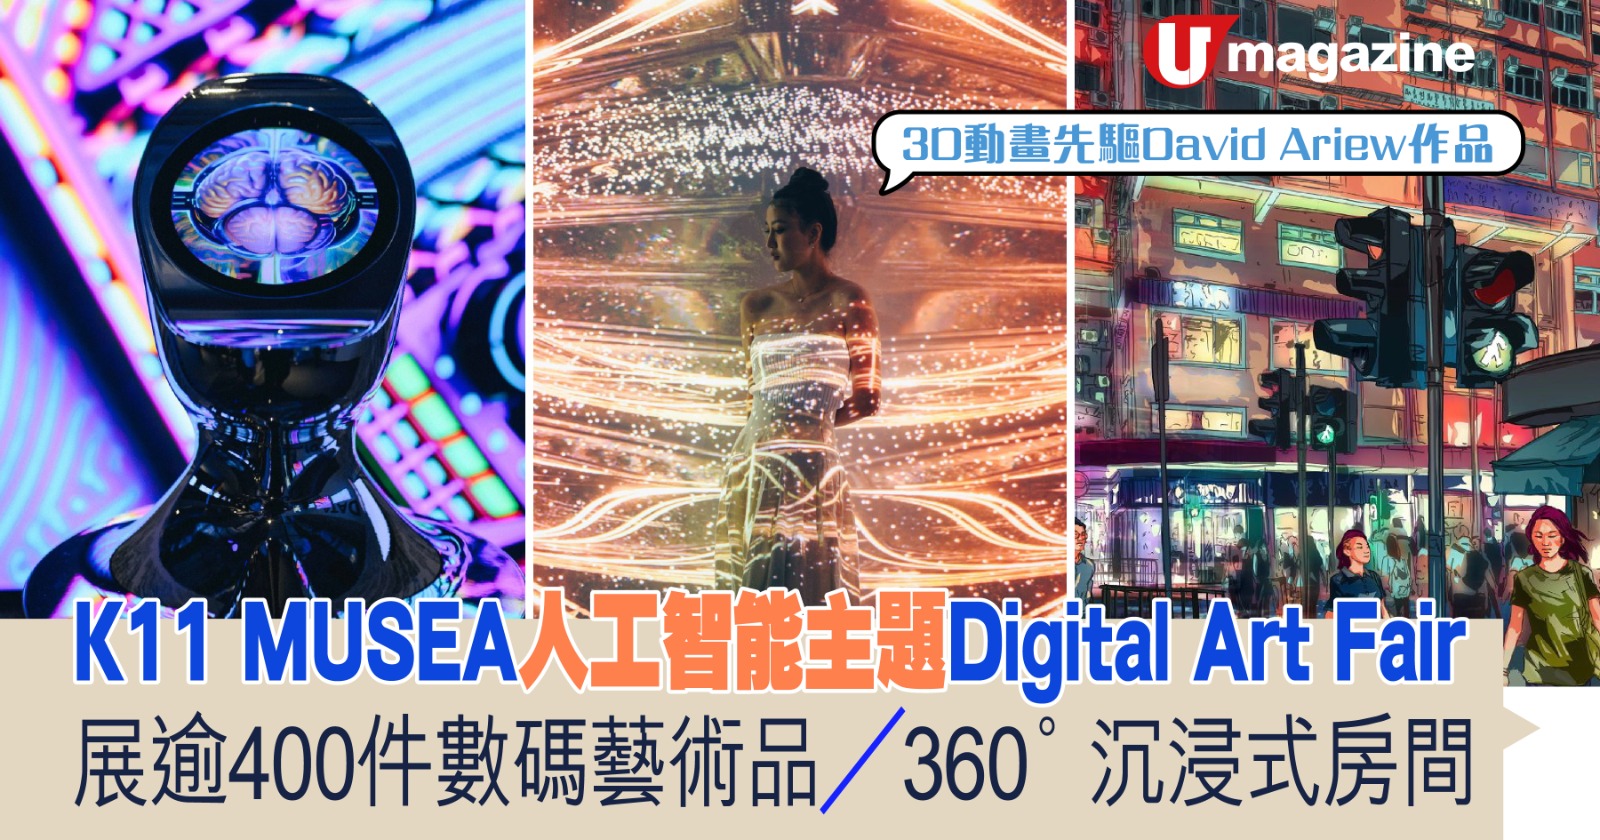 K11 MUSEA人工智能主題Digital Art Fair 展逾400件數碼藝術品 / 360°沉浸式房間